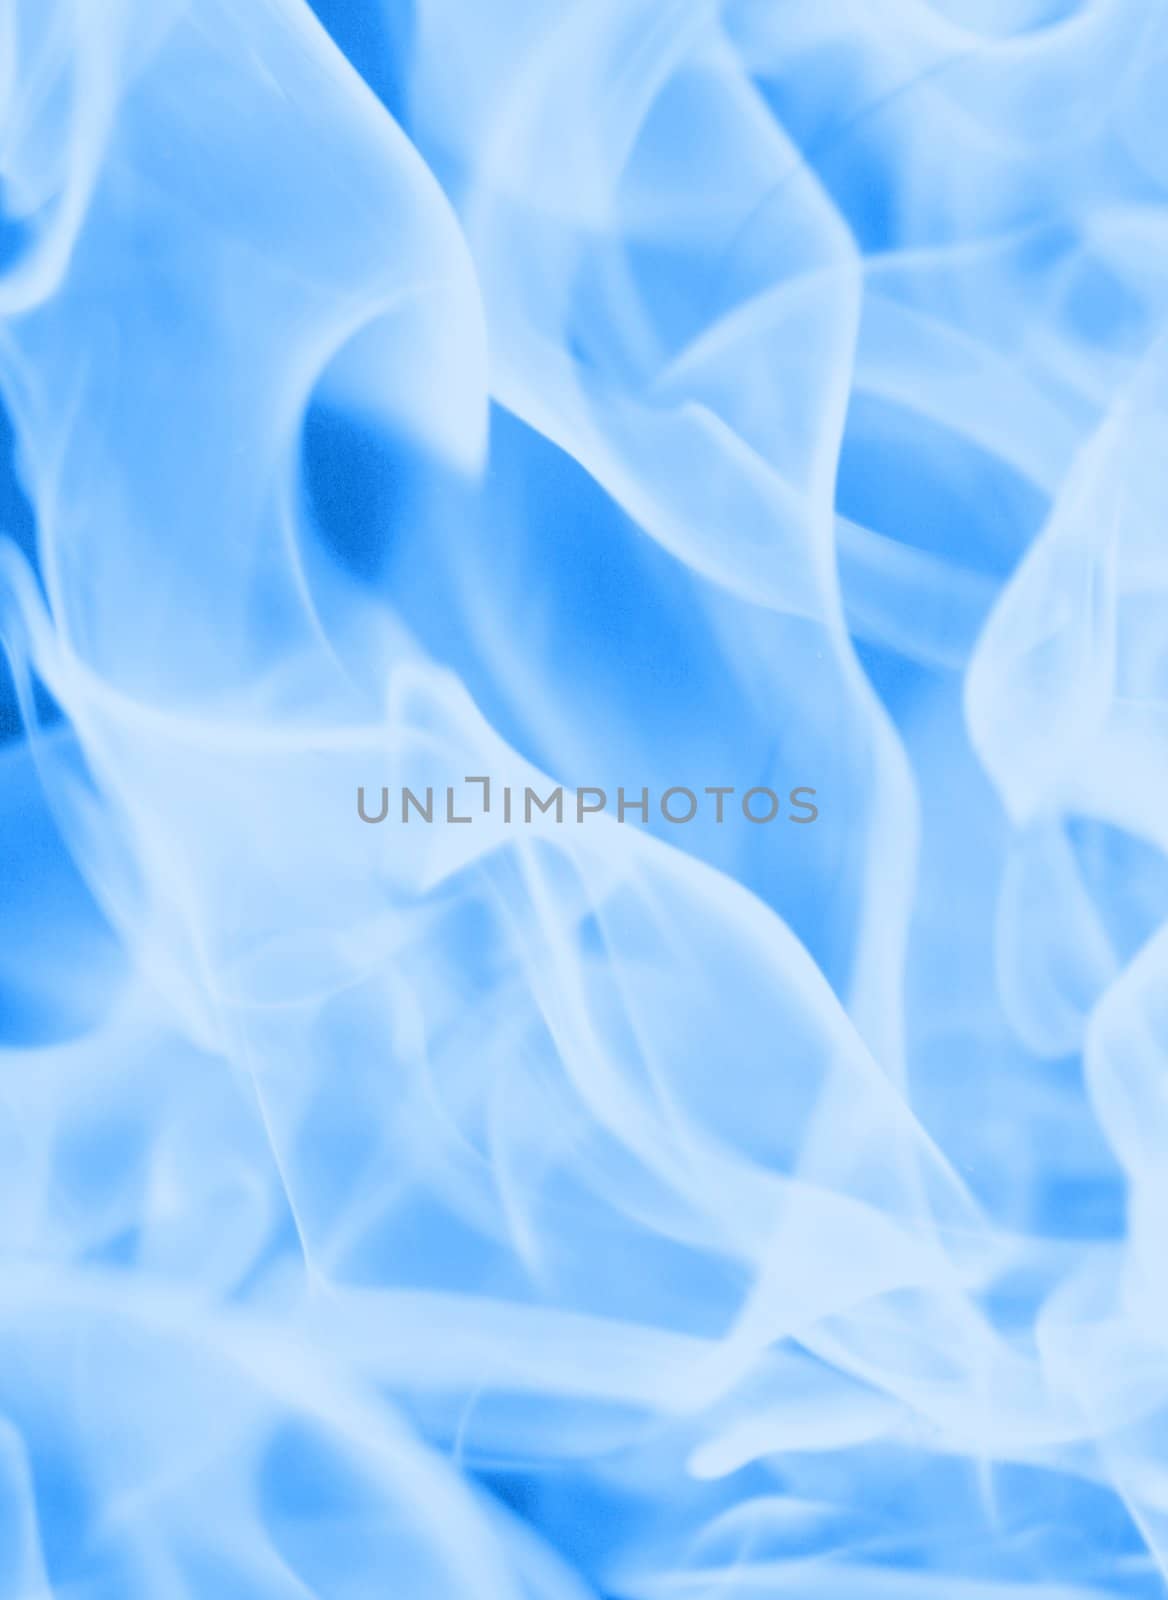 Light blue flame background by vvvera